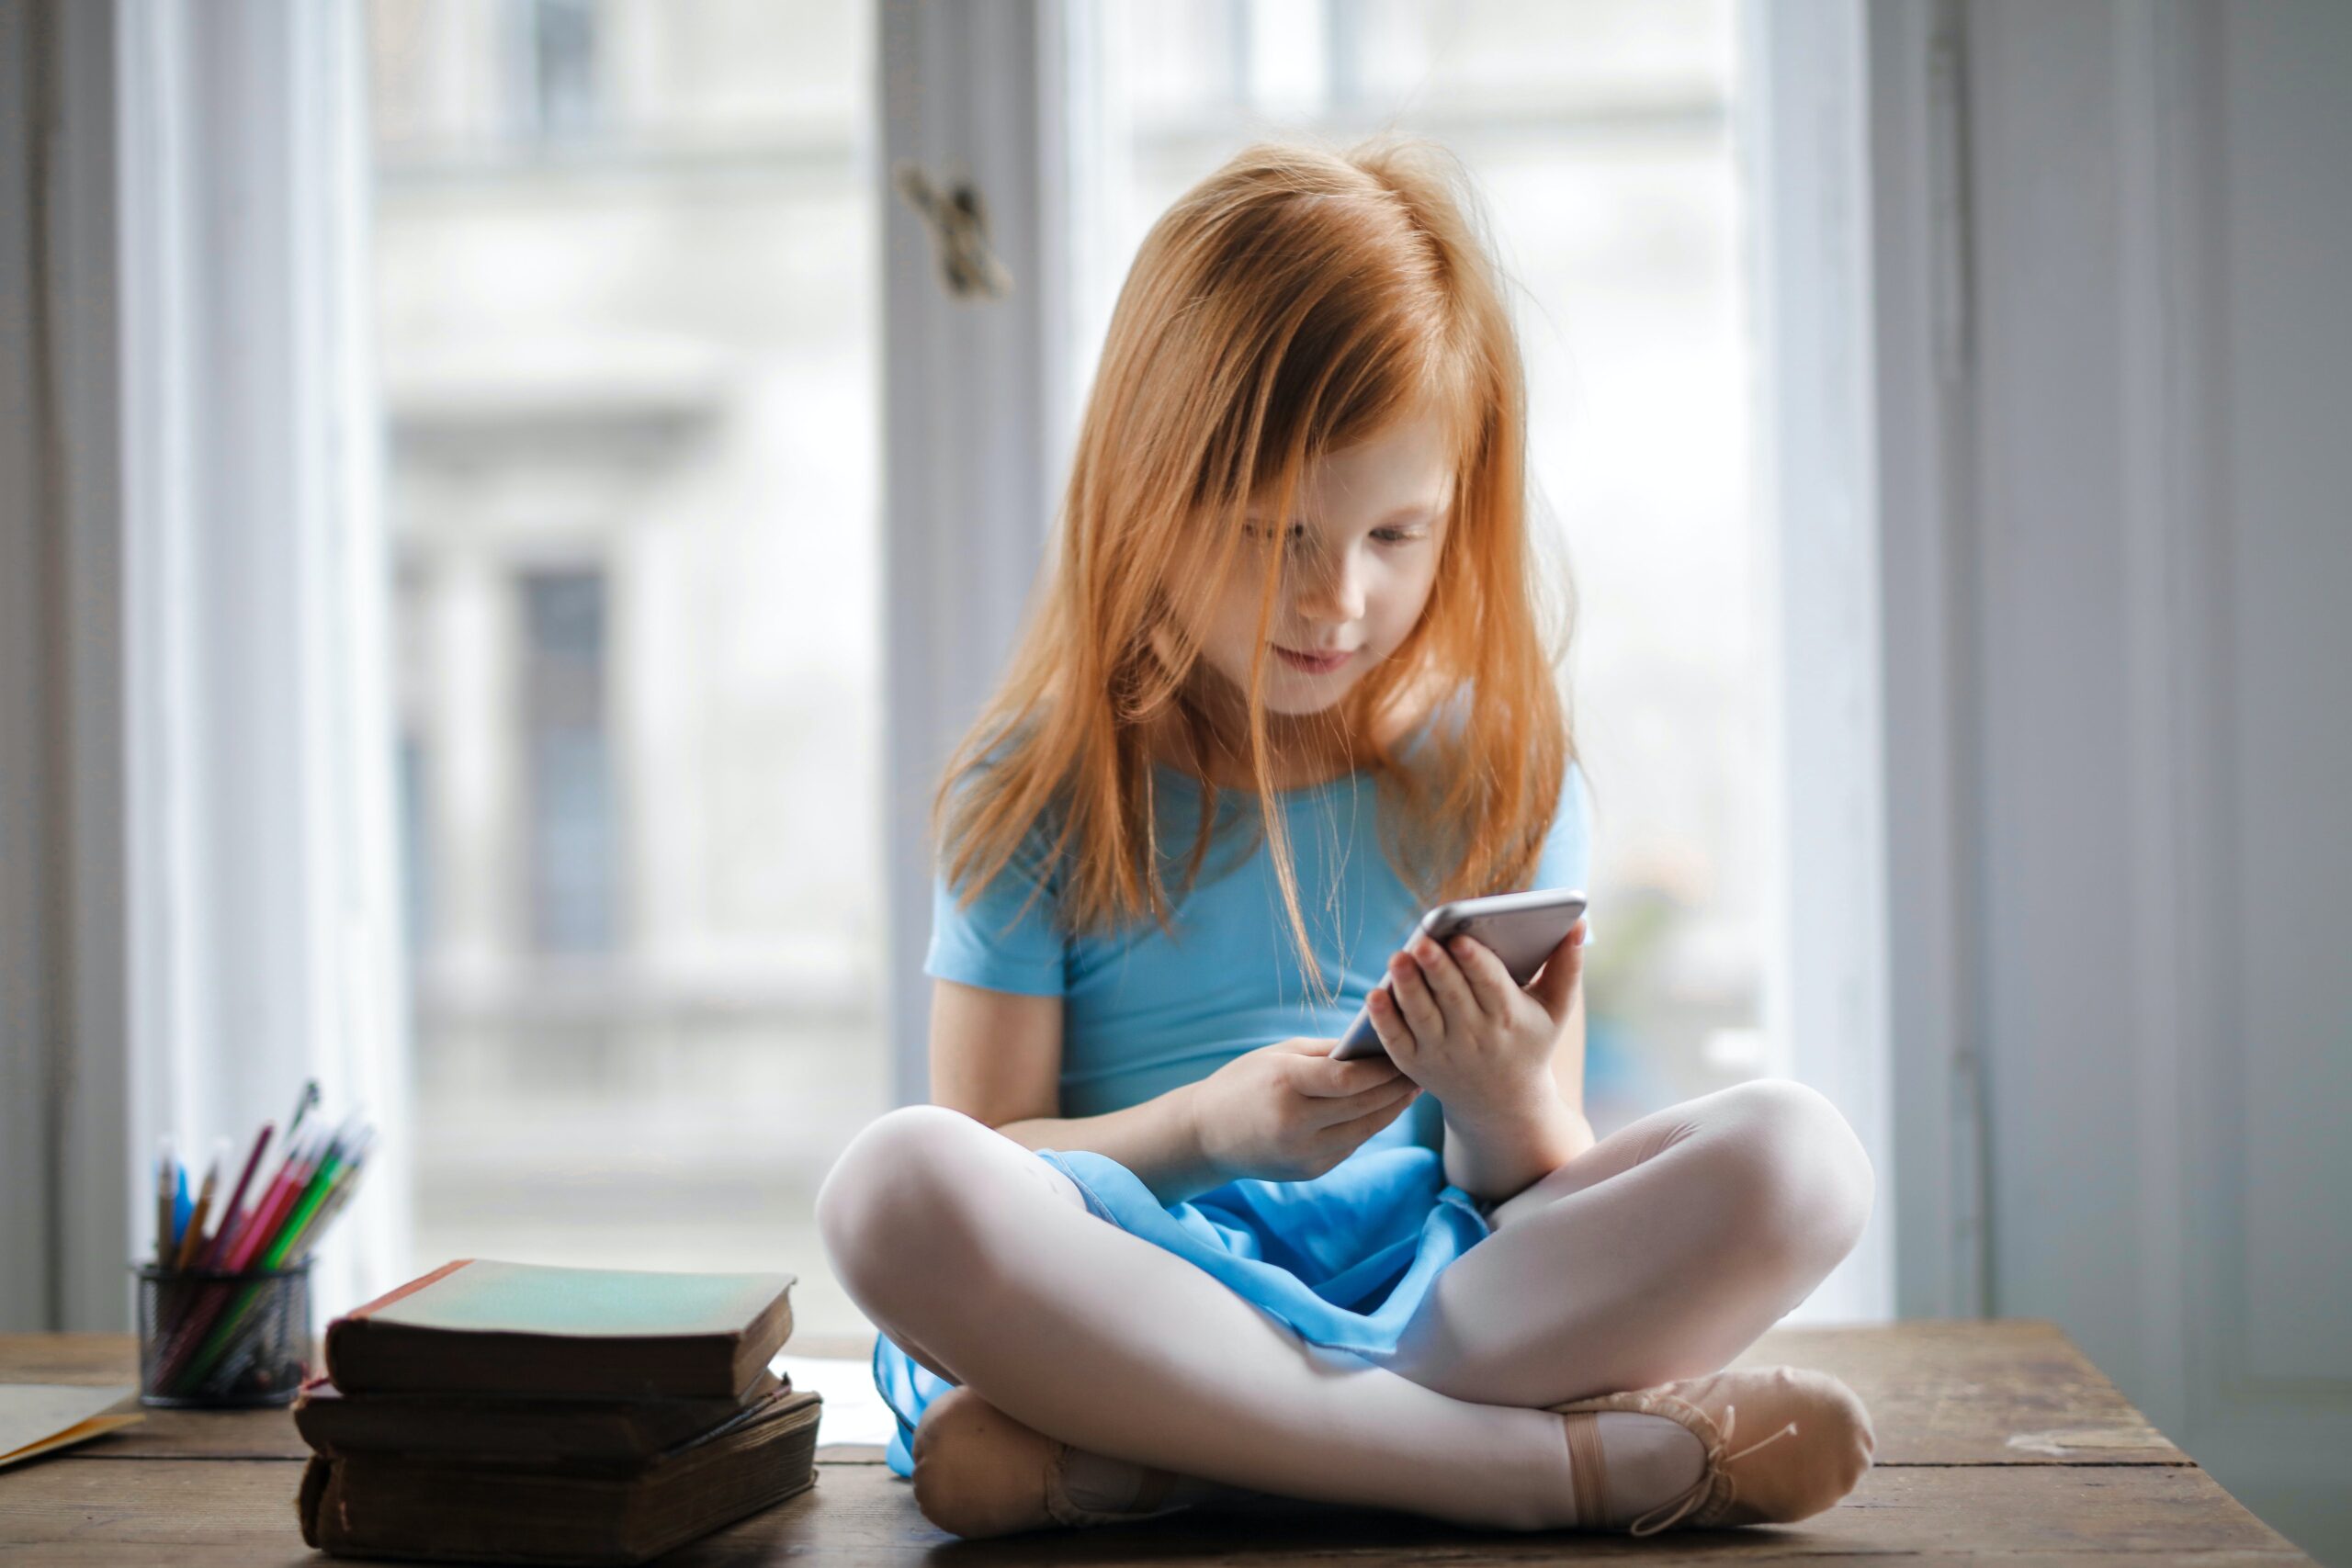 Smartphones in the Hands of Our Children